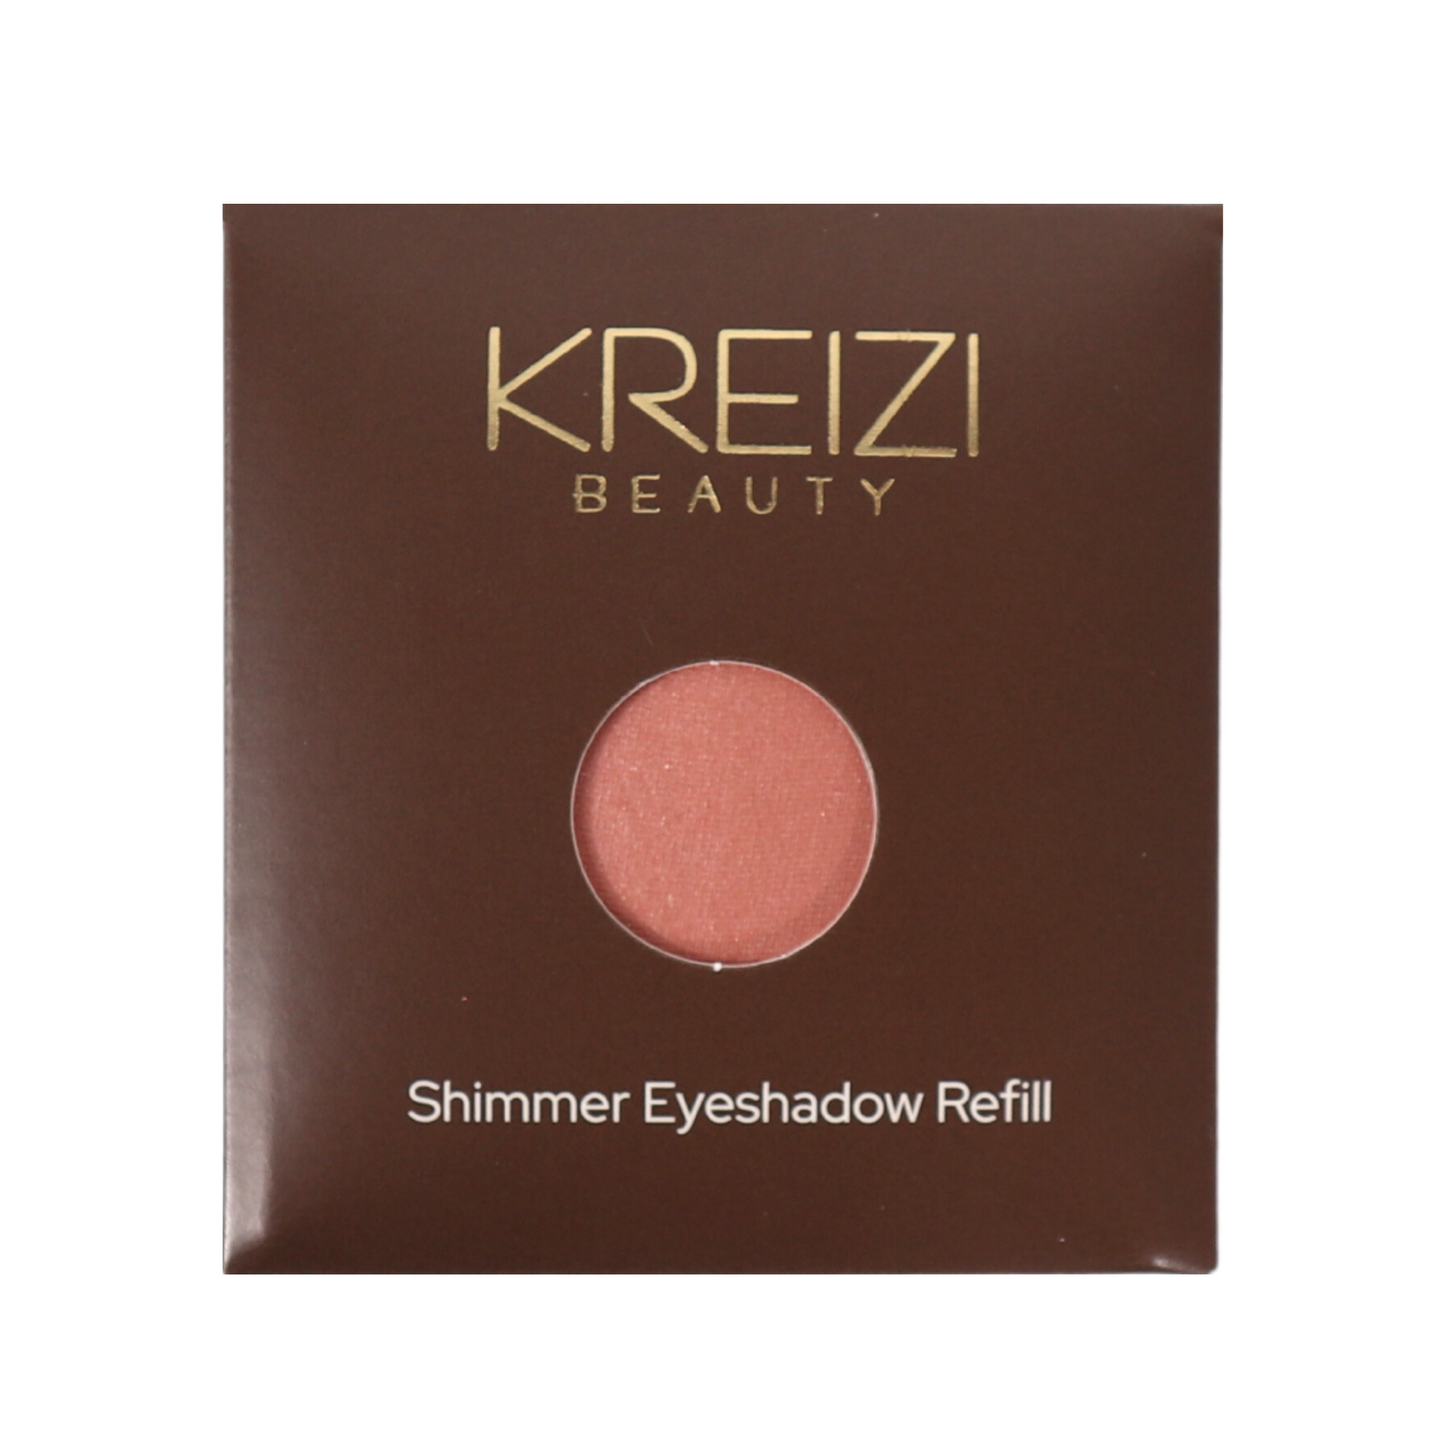 Kreizi ‘bout You - Everyday Eyeshadow Palette